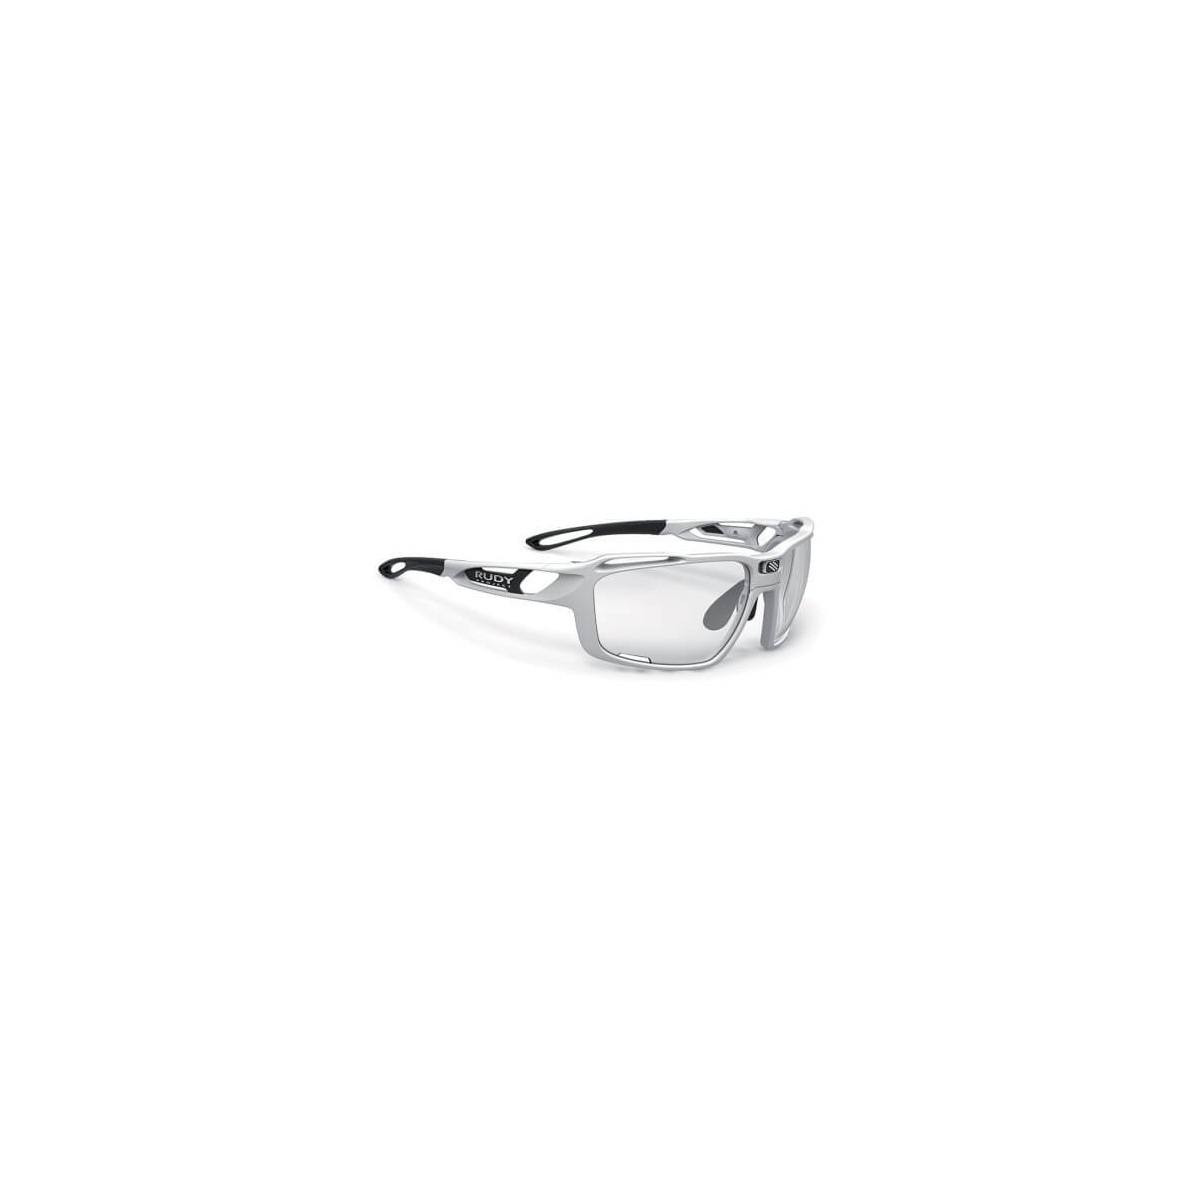 One for günstig Kaufen-Sintryx White Gloss Photokromatische Brille. Sintryx White Gloss Photokromatische Brille <![CDATA[Sintryx White Gloss Photokromatische Brille
 Sintryx ist mit vielen Objektivkonfigurationen erhältlich, darunter ImpactX, die weltweit fortschrittlichste ph